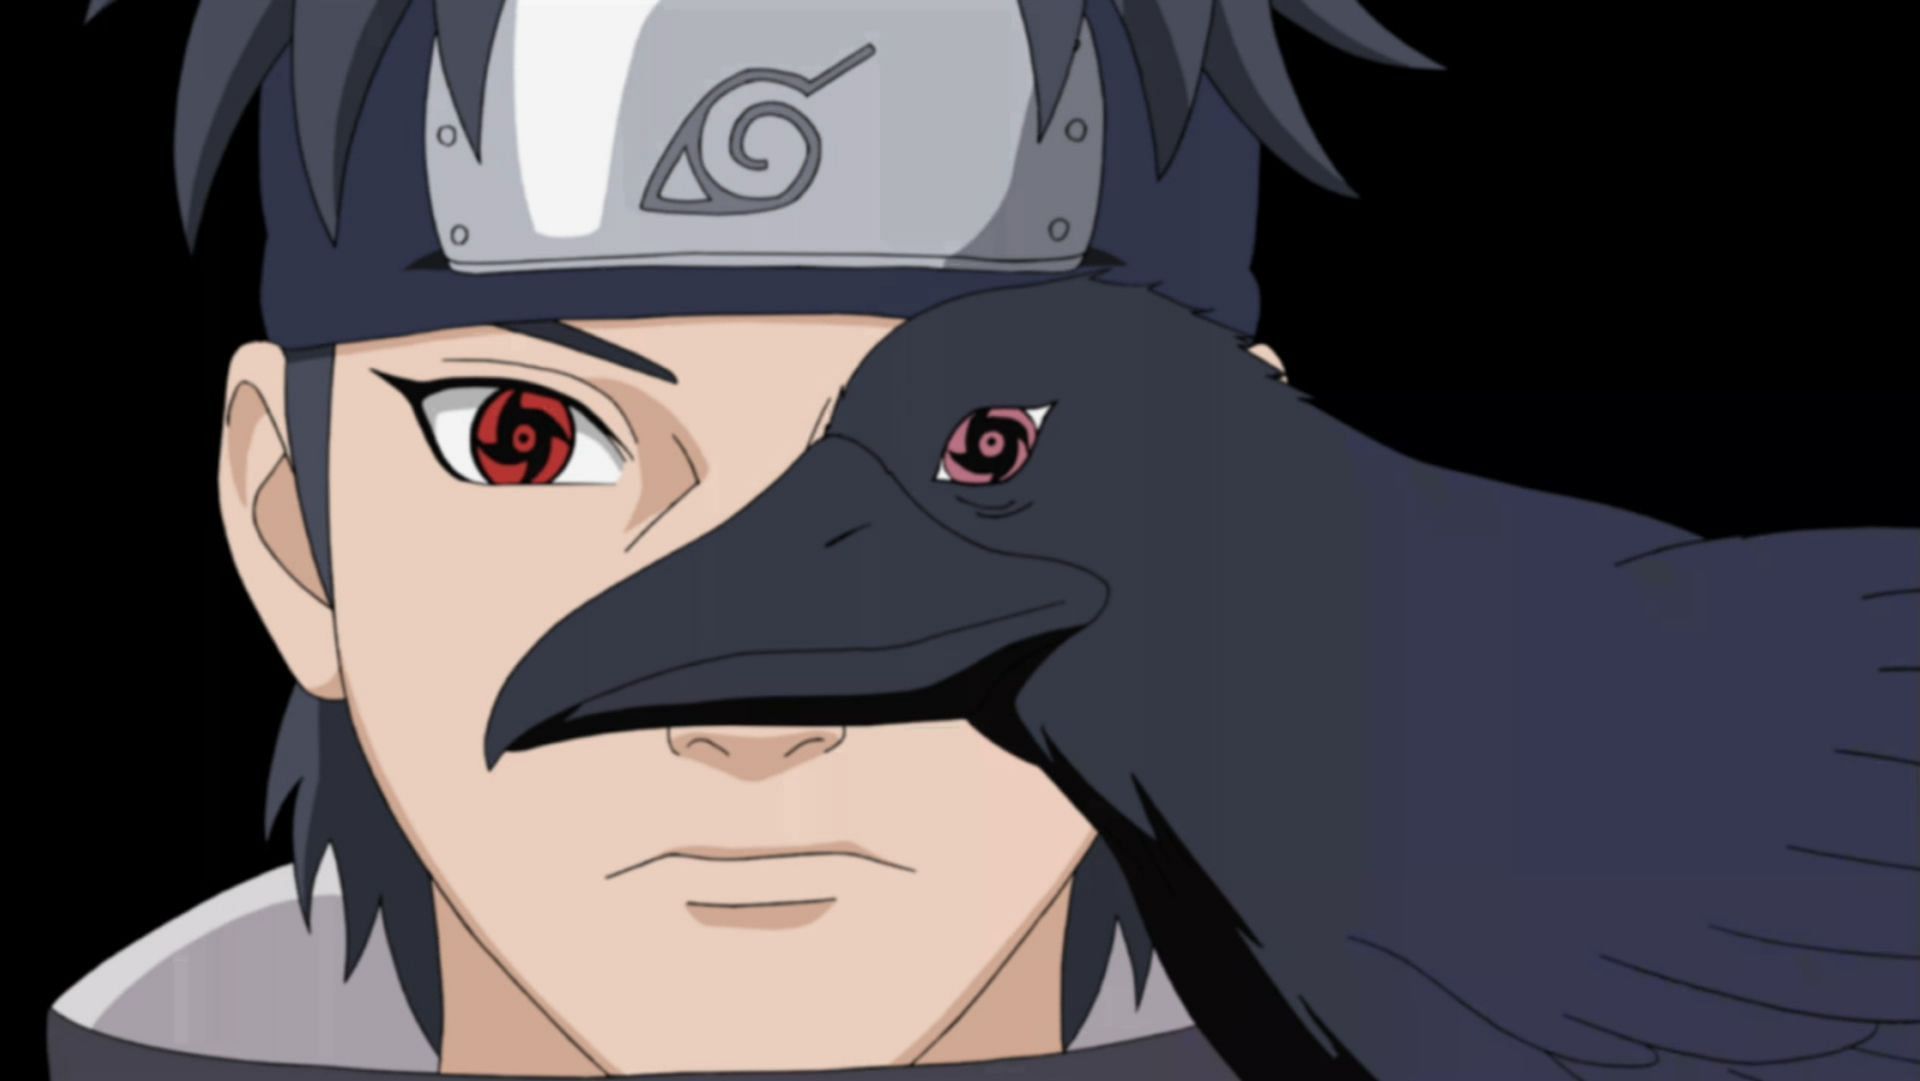 Shisui Uchiha (Image via Naruto)